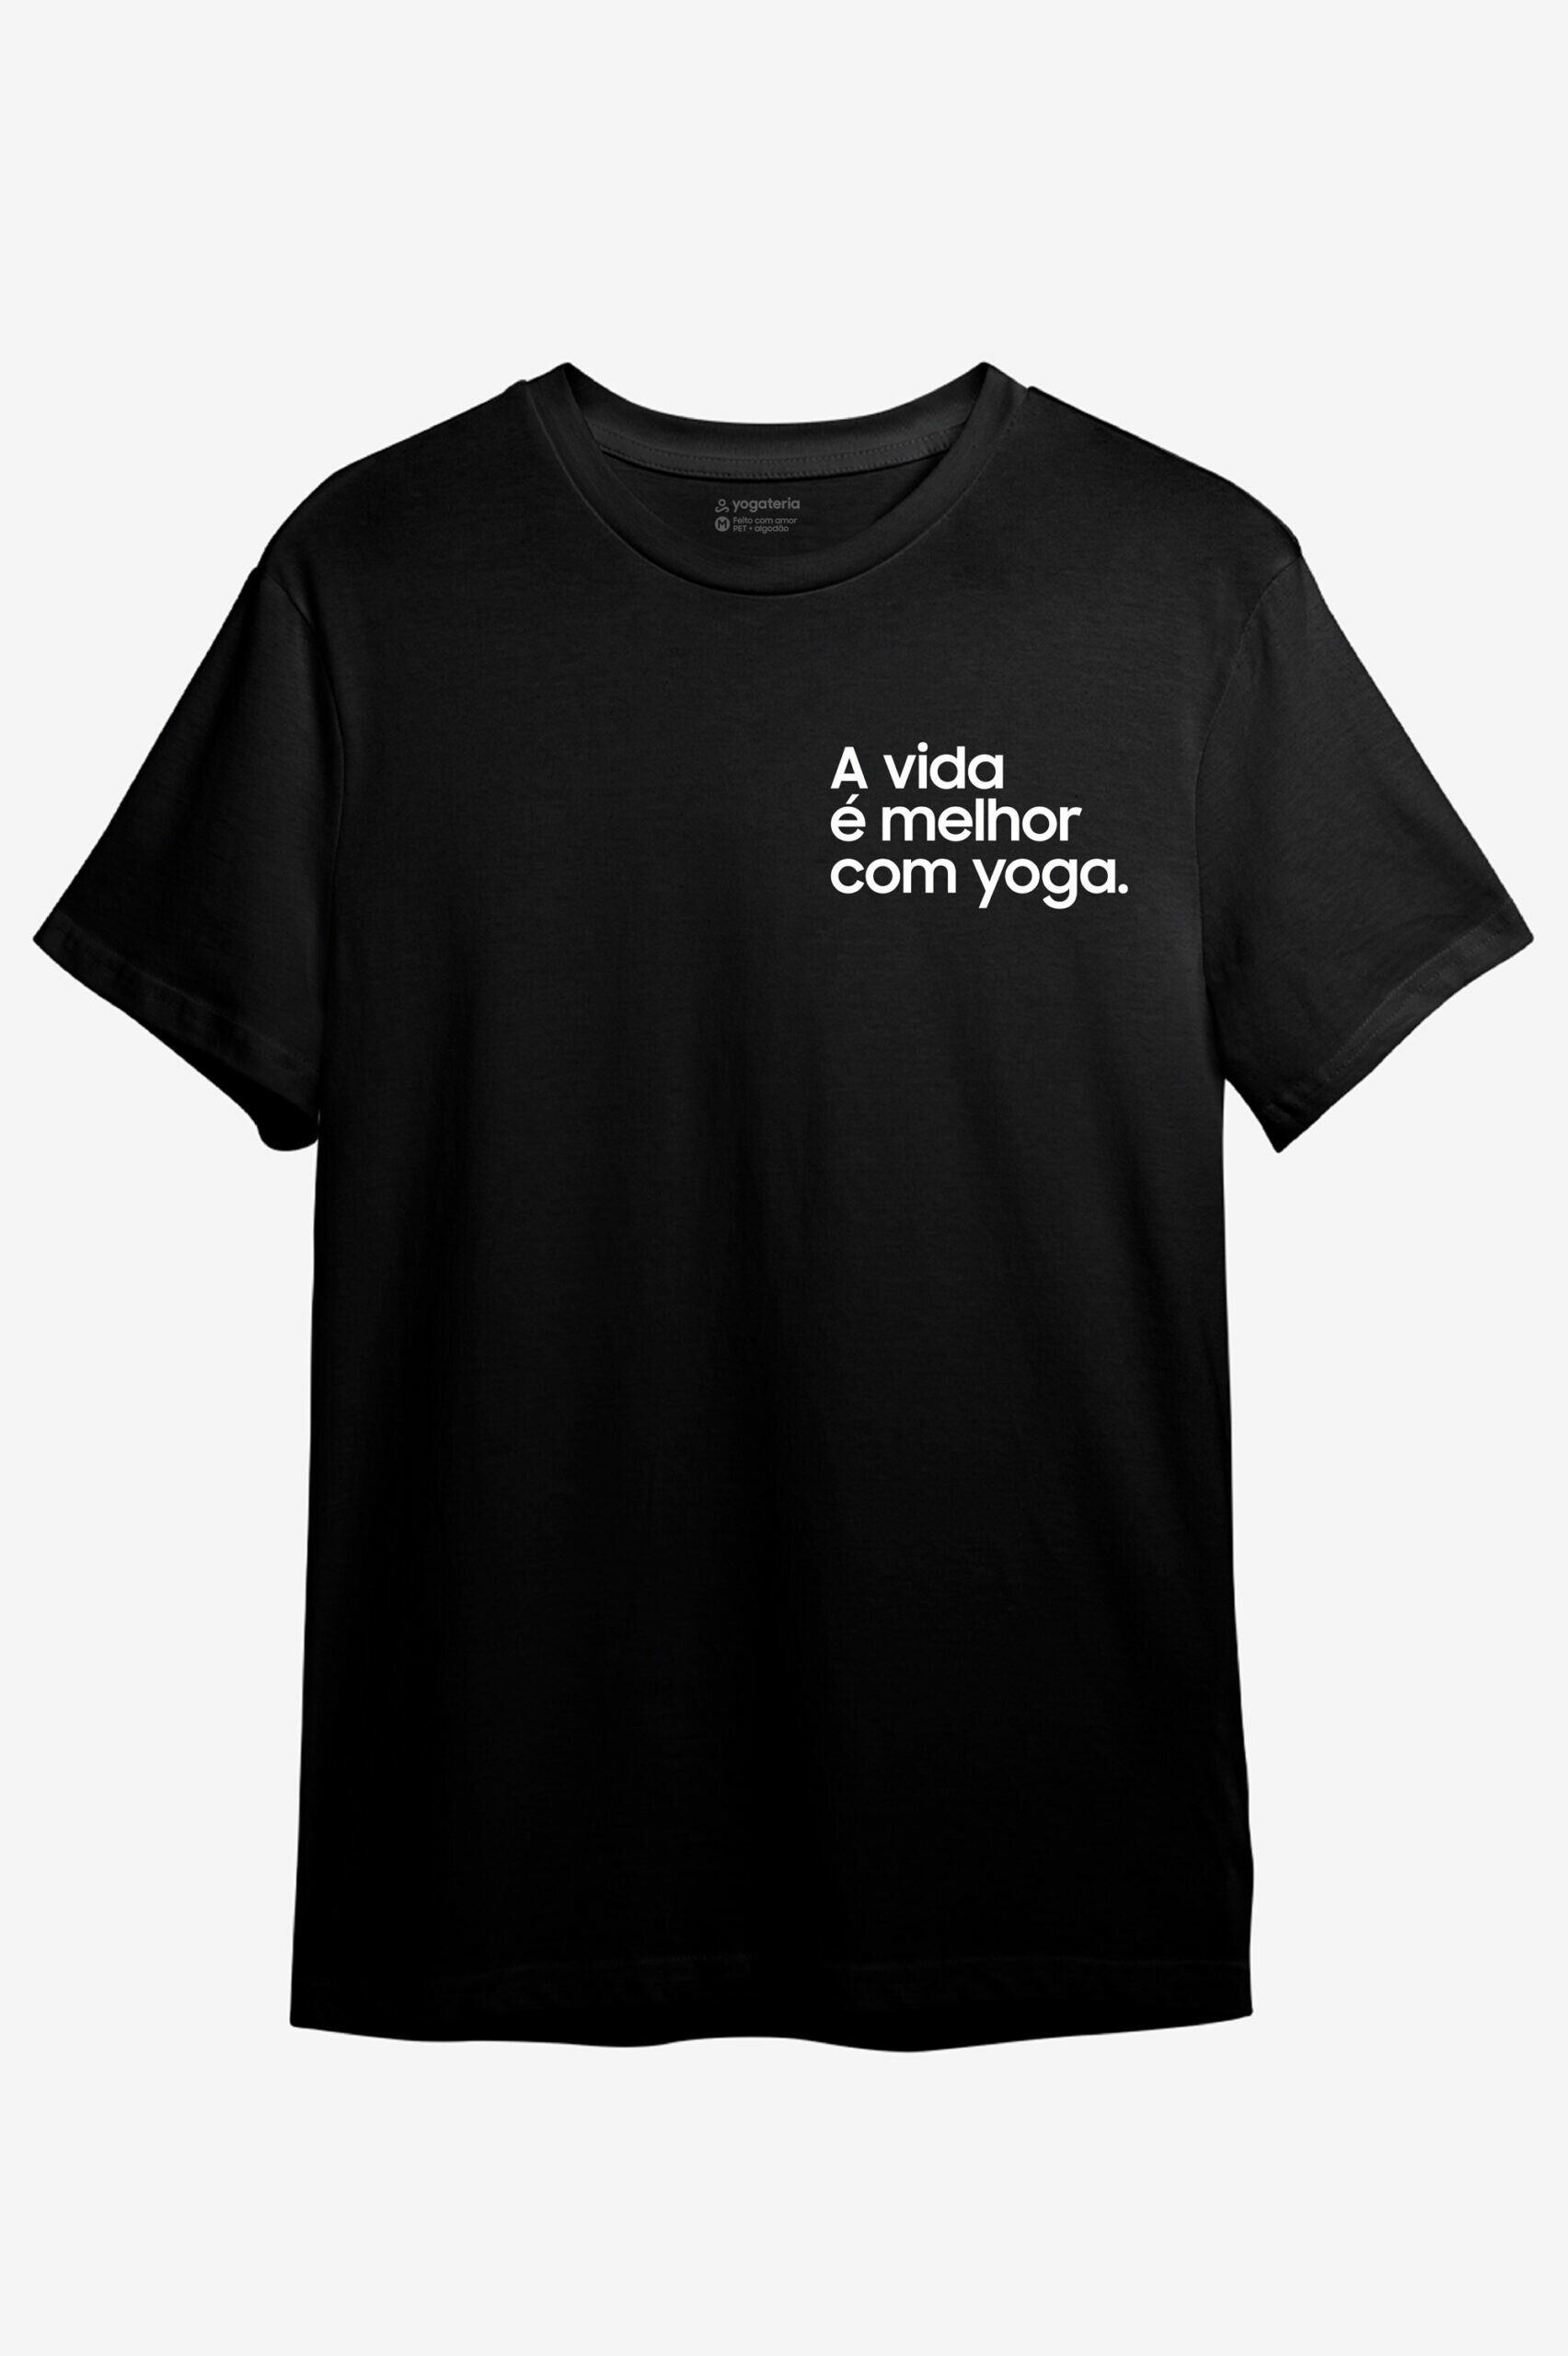 Camiseta Yoga Hoje Não Vou Me Estressar Com Coisas Que Não Posso Controlar